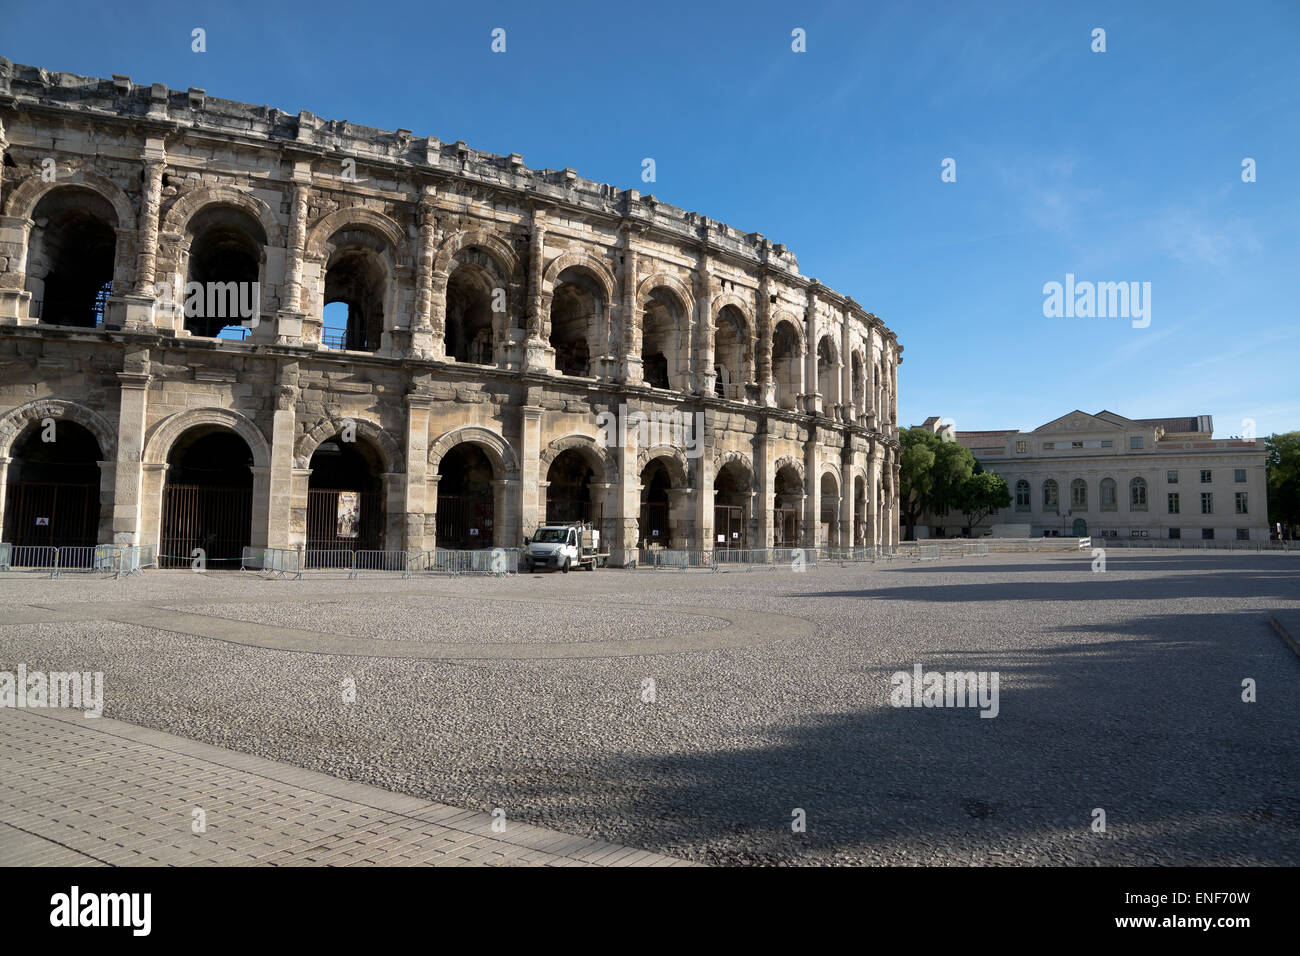 Die Arena von Nimes ist ein römisches Amphitheater befindet sich in der französischen Stadt Nimes. Stockfoto